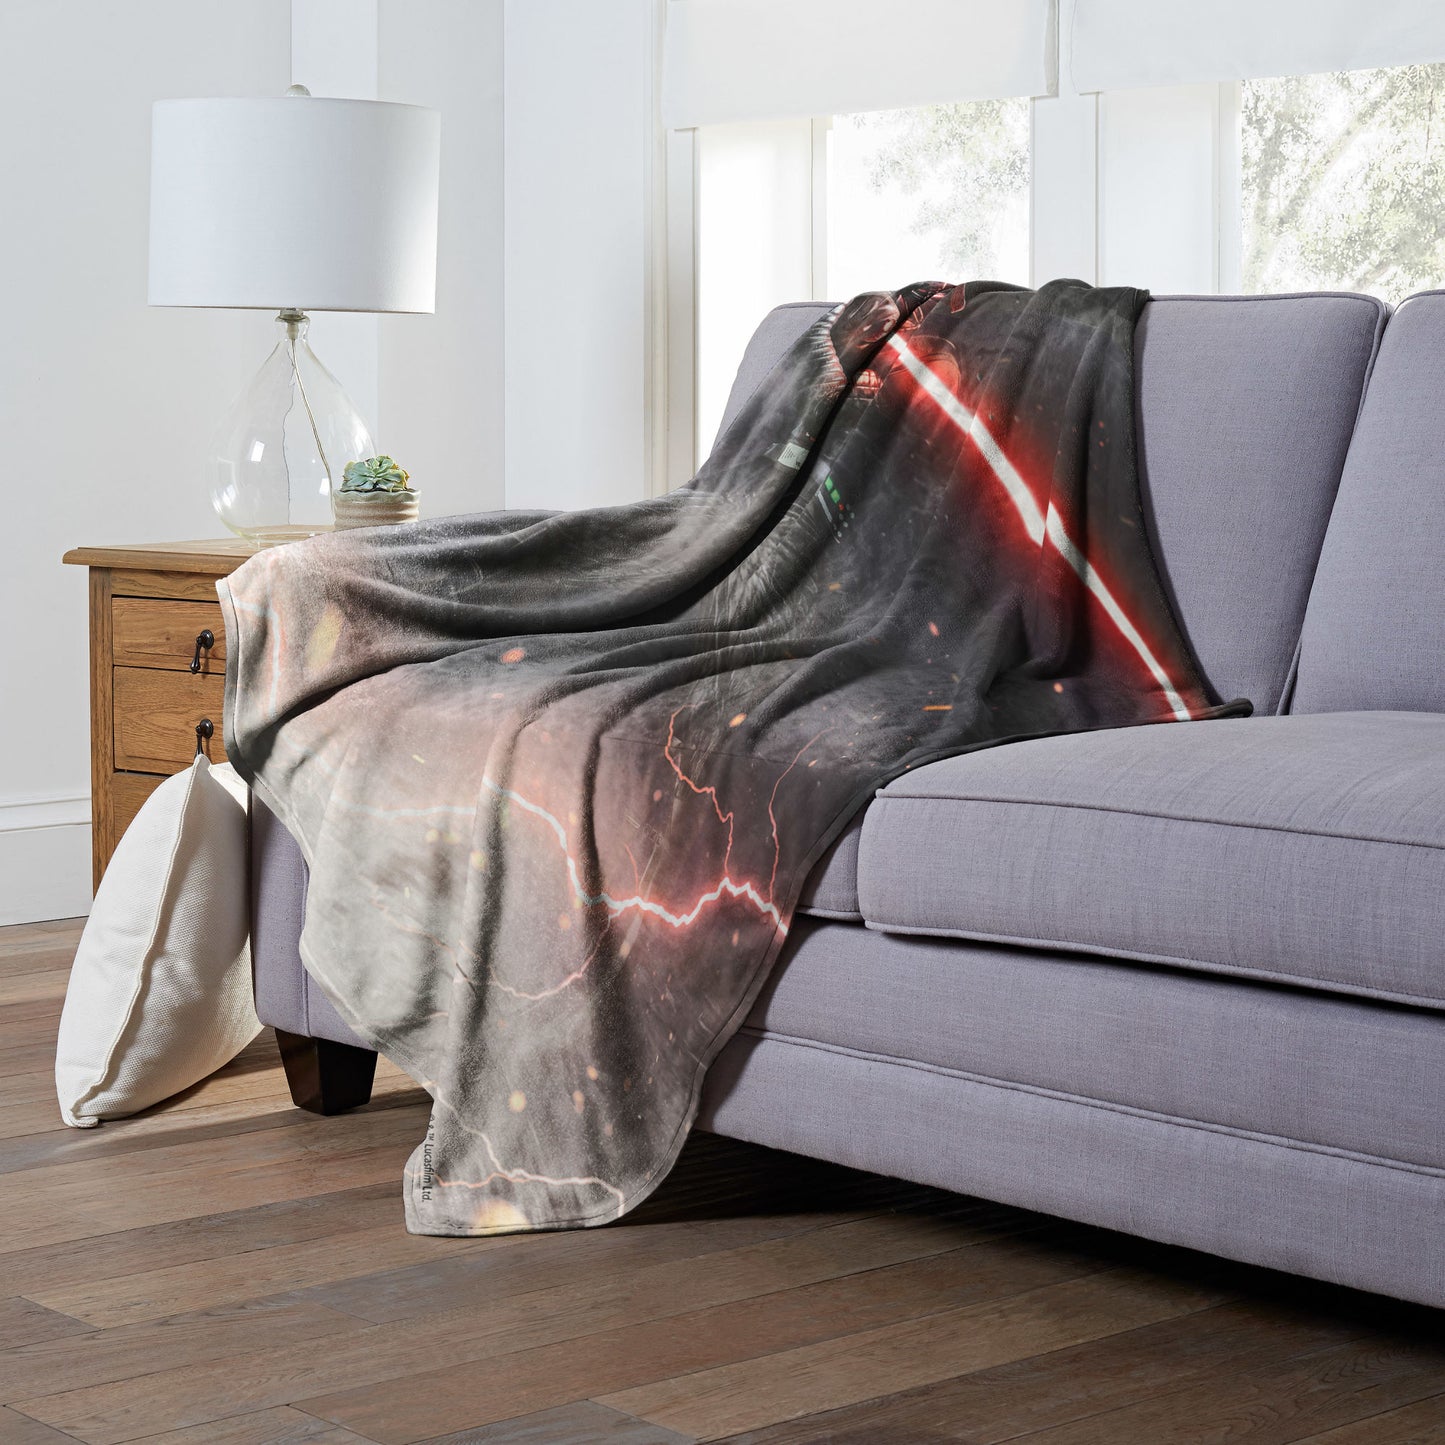 Star Wars Chosen One Throw Blanket 50"x60"